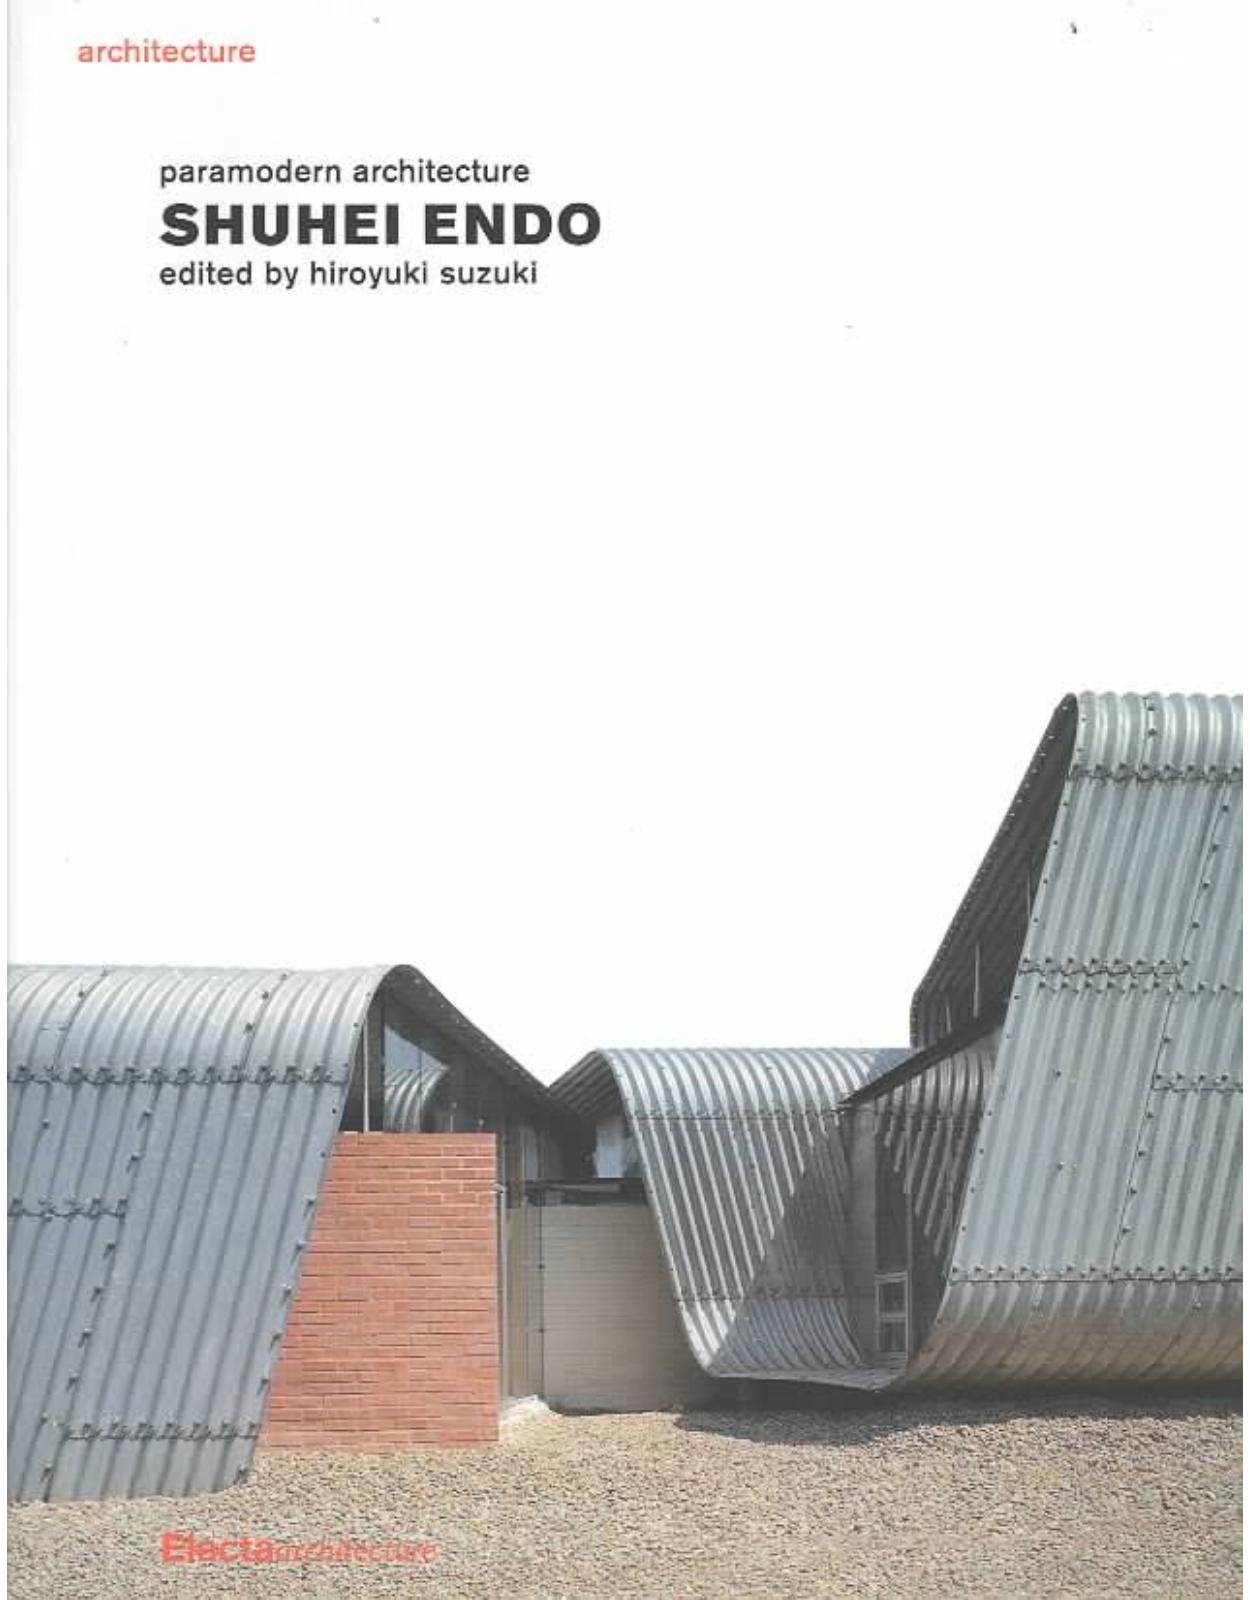 Shuhei Endo: Paramodern Architecture